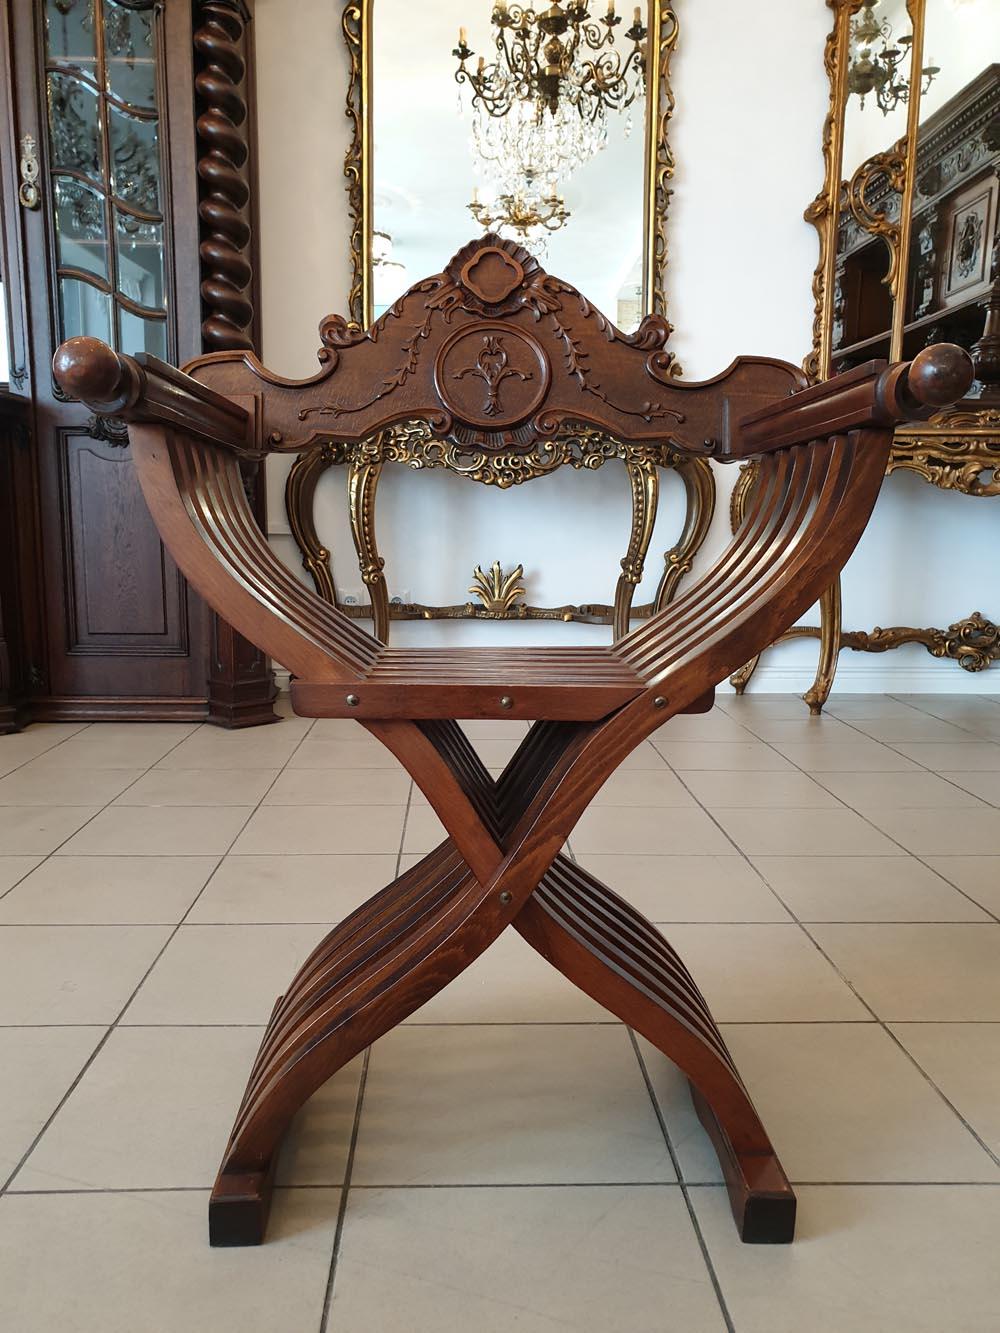 Un objet intéressant, efficace et très décoratif - Sella Curulis - appelé chaise Curule, c'est-à-dire une chaise pliante en ciseaux - un fauteuil, qui a aujourd'hui des fonctions essentiellement décoratives.
Une chaise curule est un modèle de